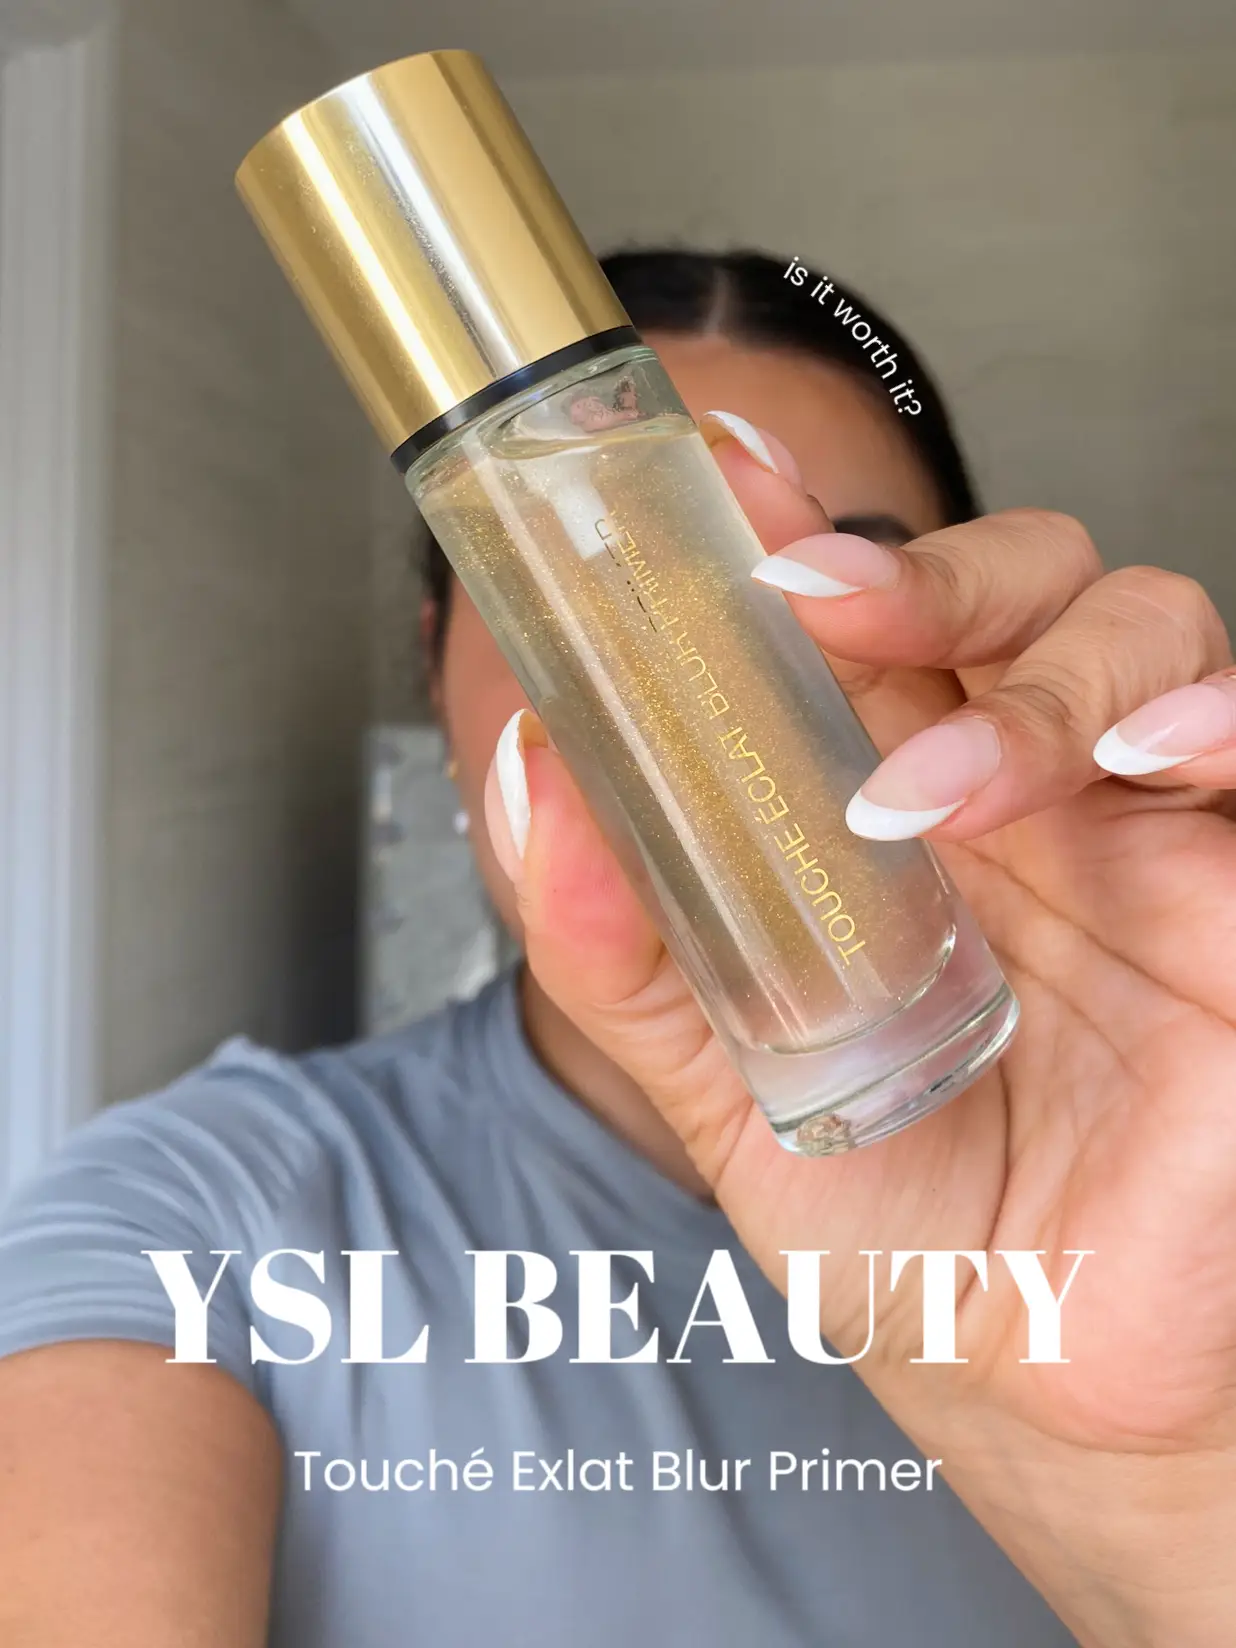 Yves Saint Laurent Touche eclat Blur Primer Silver Review - Beauty Review